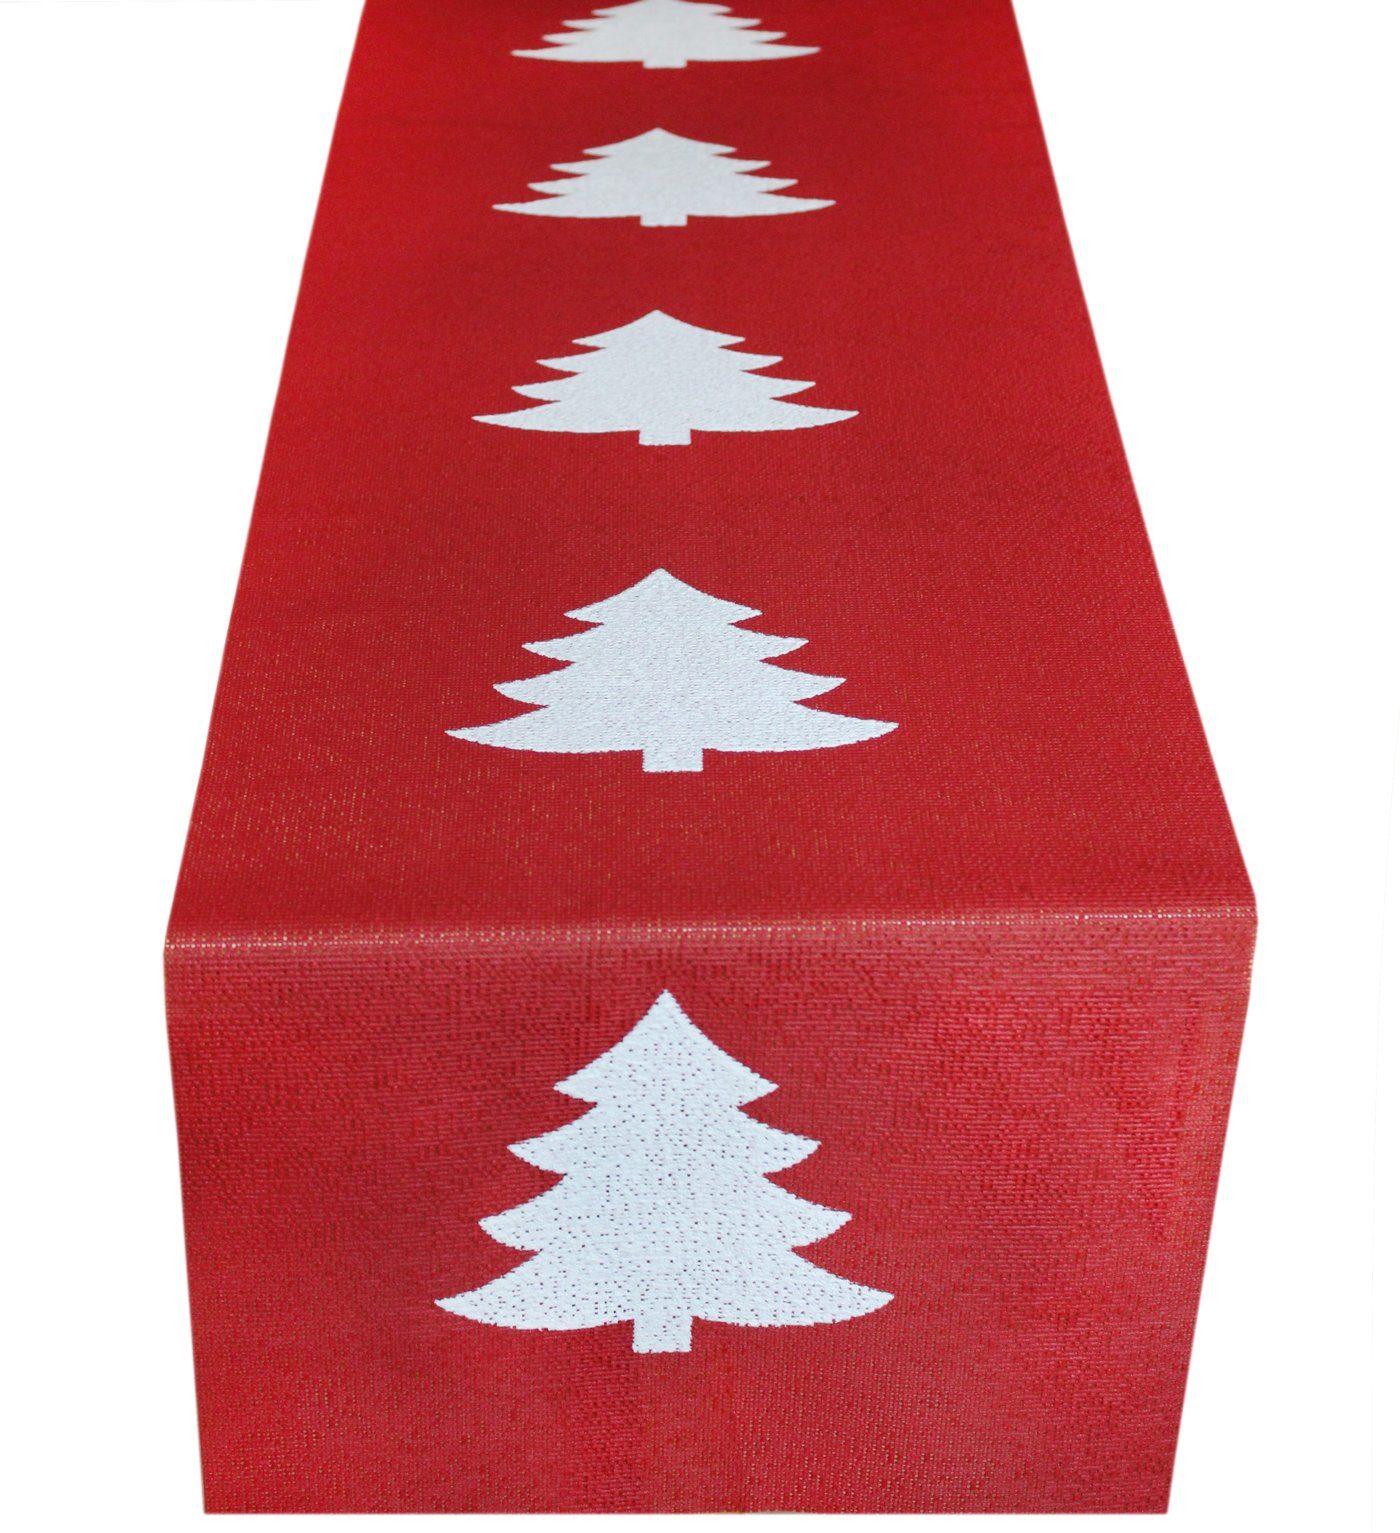 Friedola Tischläufer Weihnachtsbaum rot, winterlicher Tischläufer mit Tannenbaummotiv